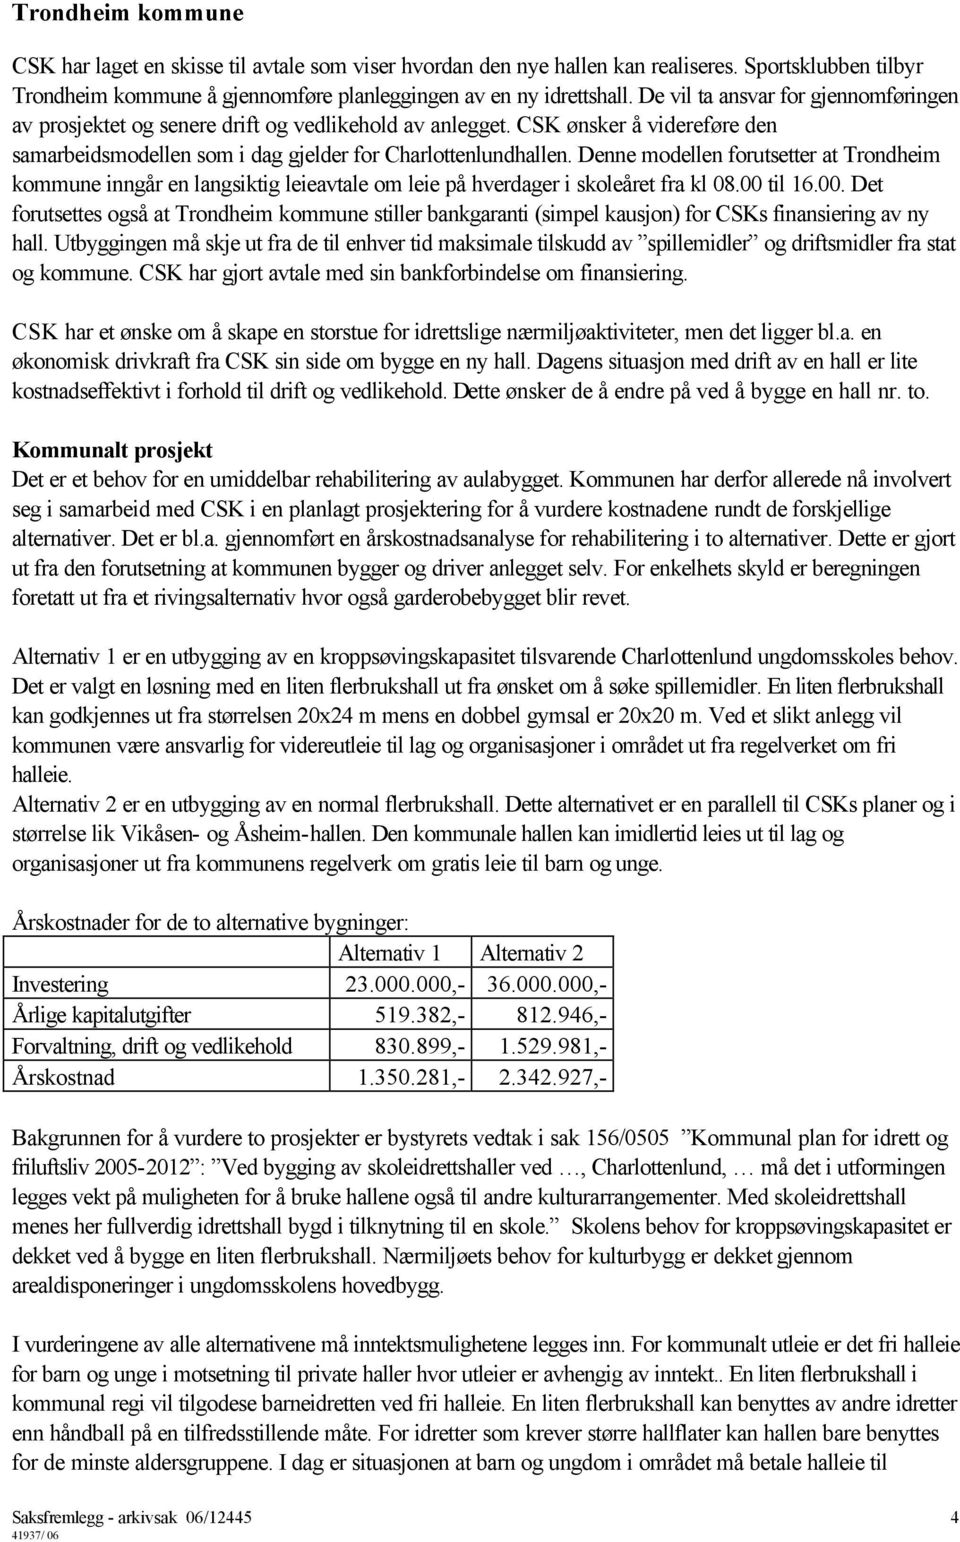 Denne modellen forutsetter at Trondheim kommune inngår en langsiktig leieavtale om leie på hverdager i skoleåret fra kl 08.00 